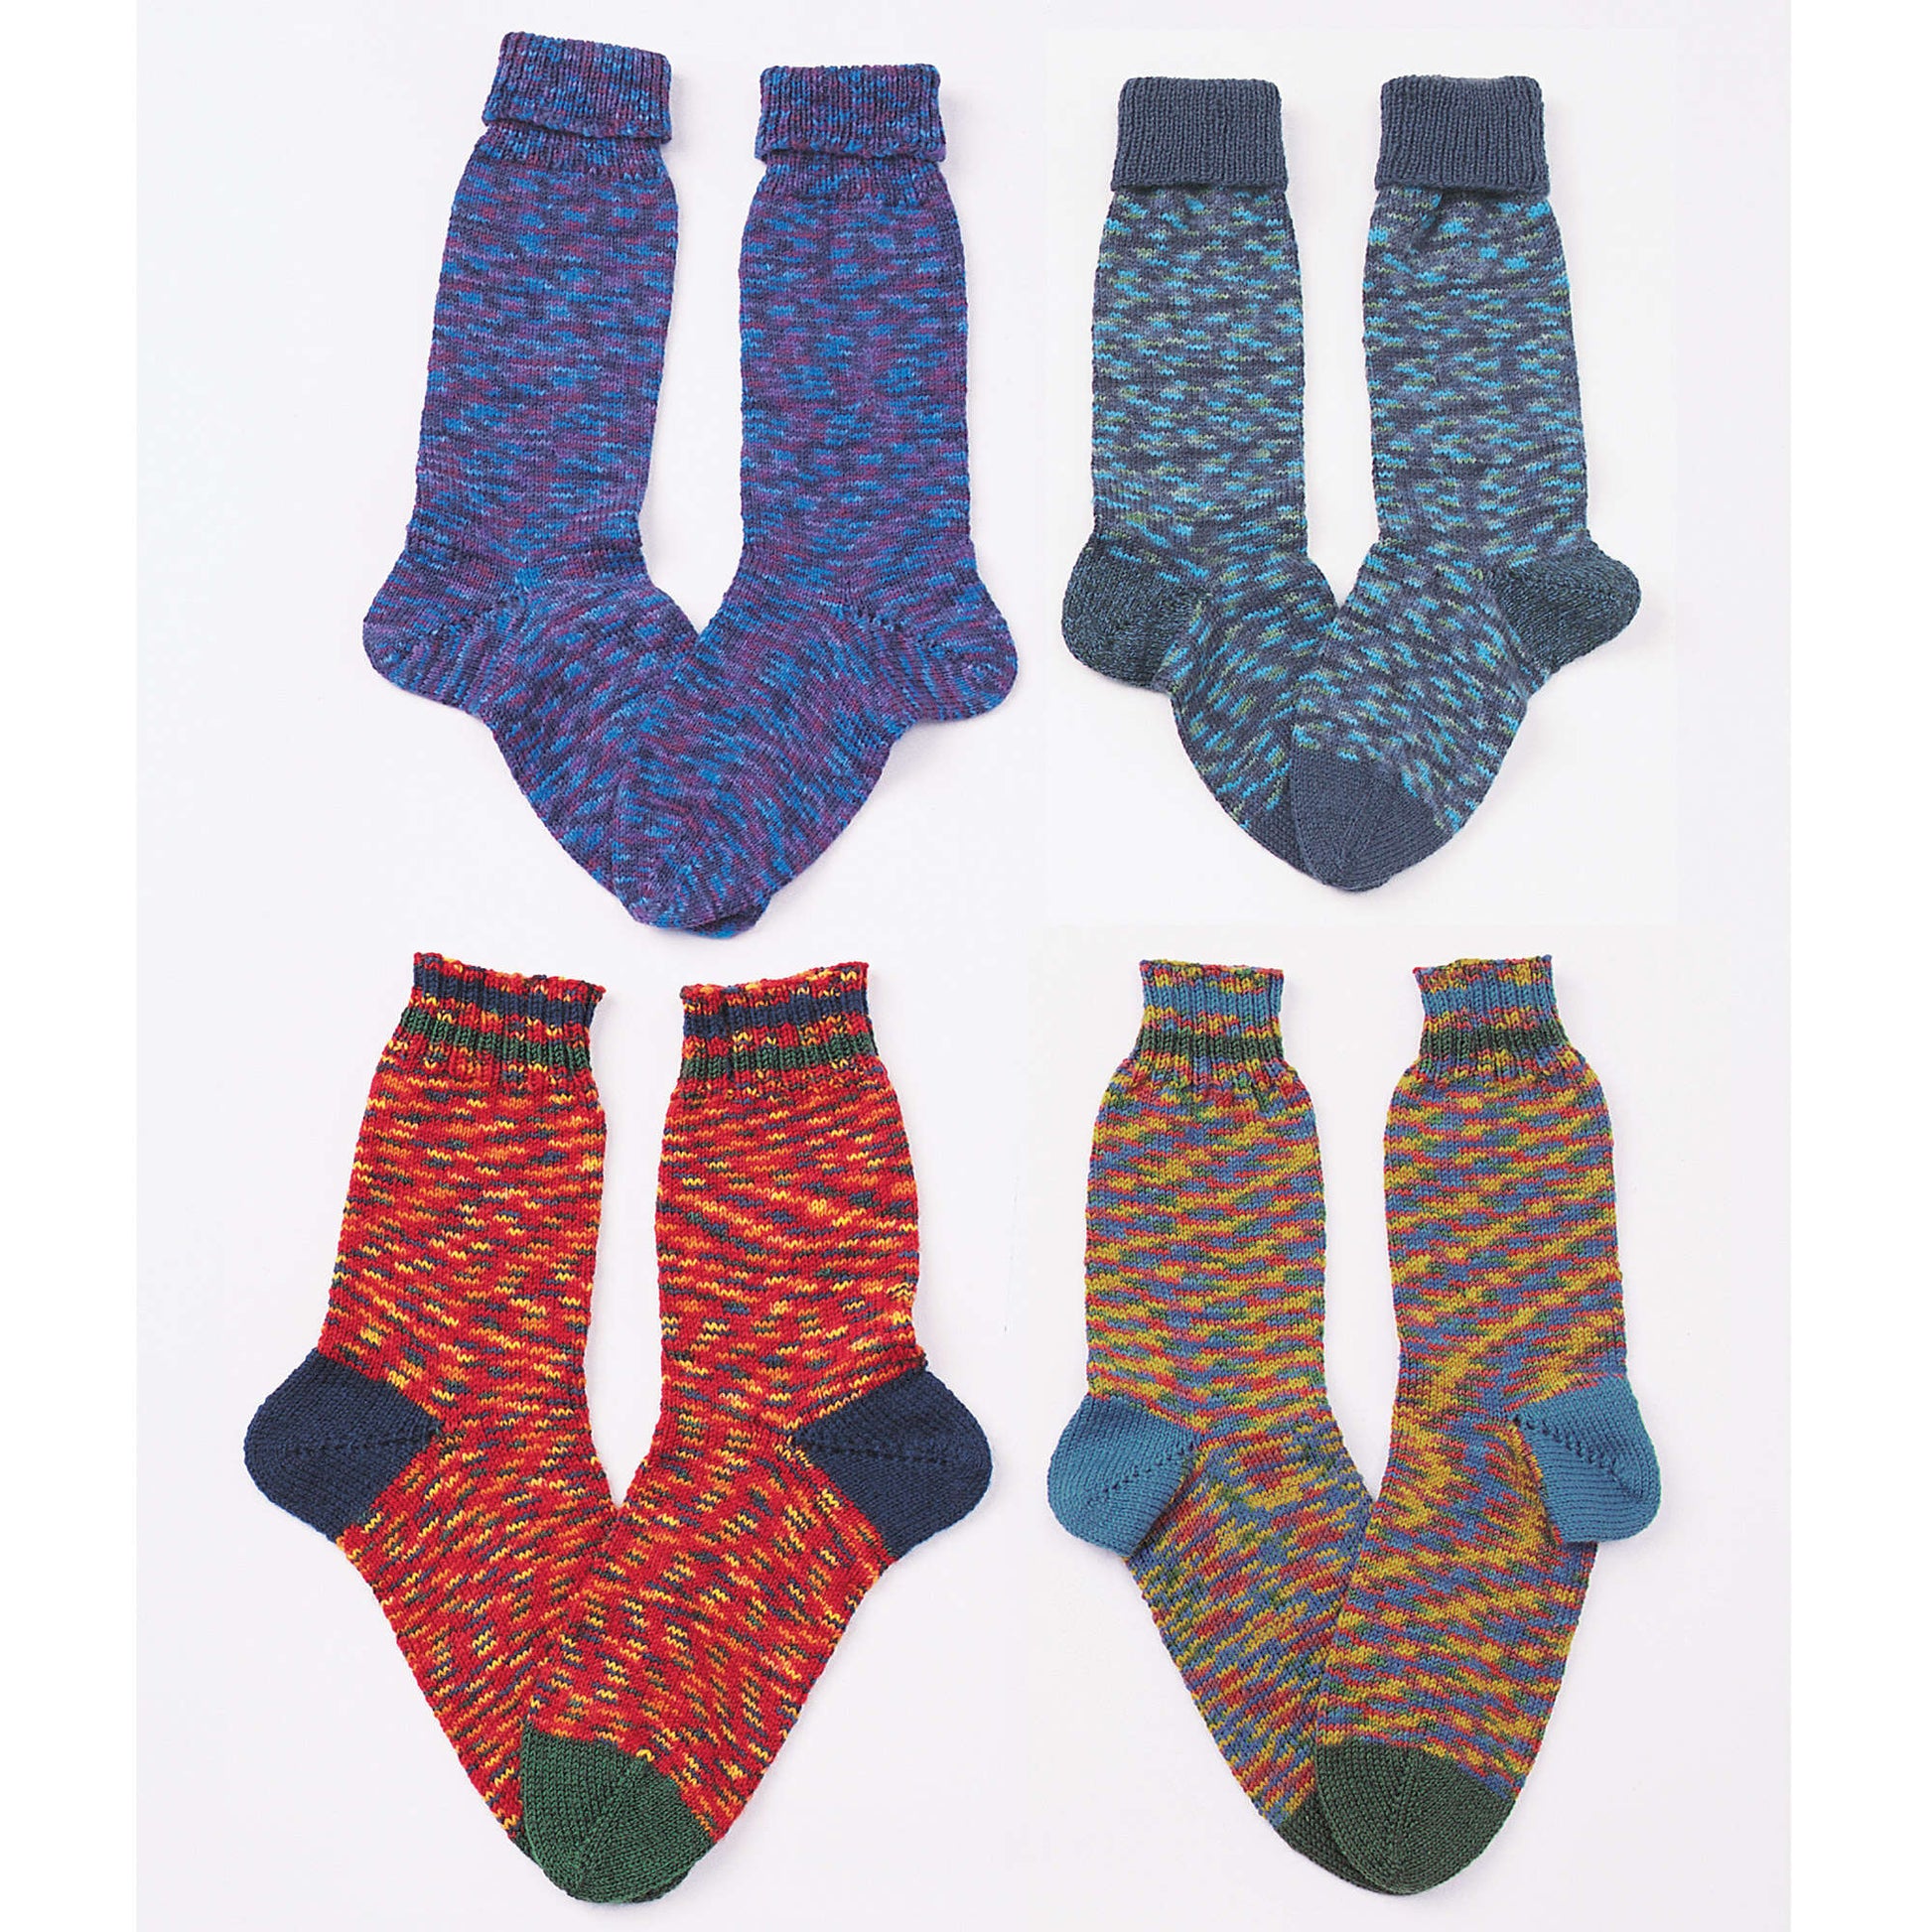 Free Patons Knit Upsidedowners (Toe-Ups) Pattern